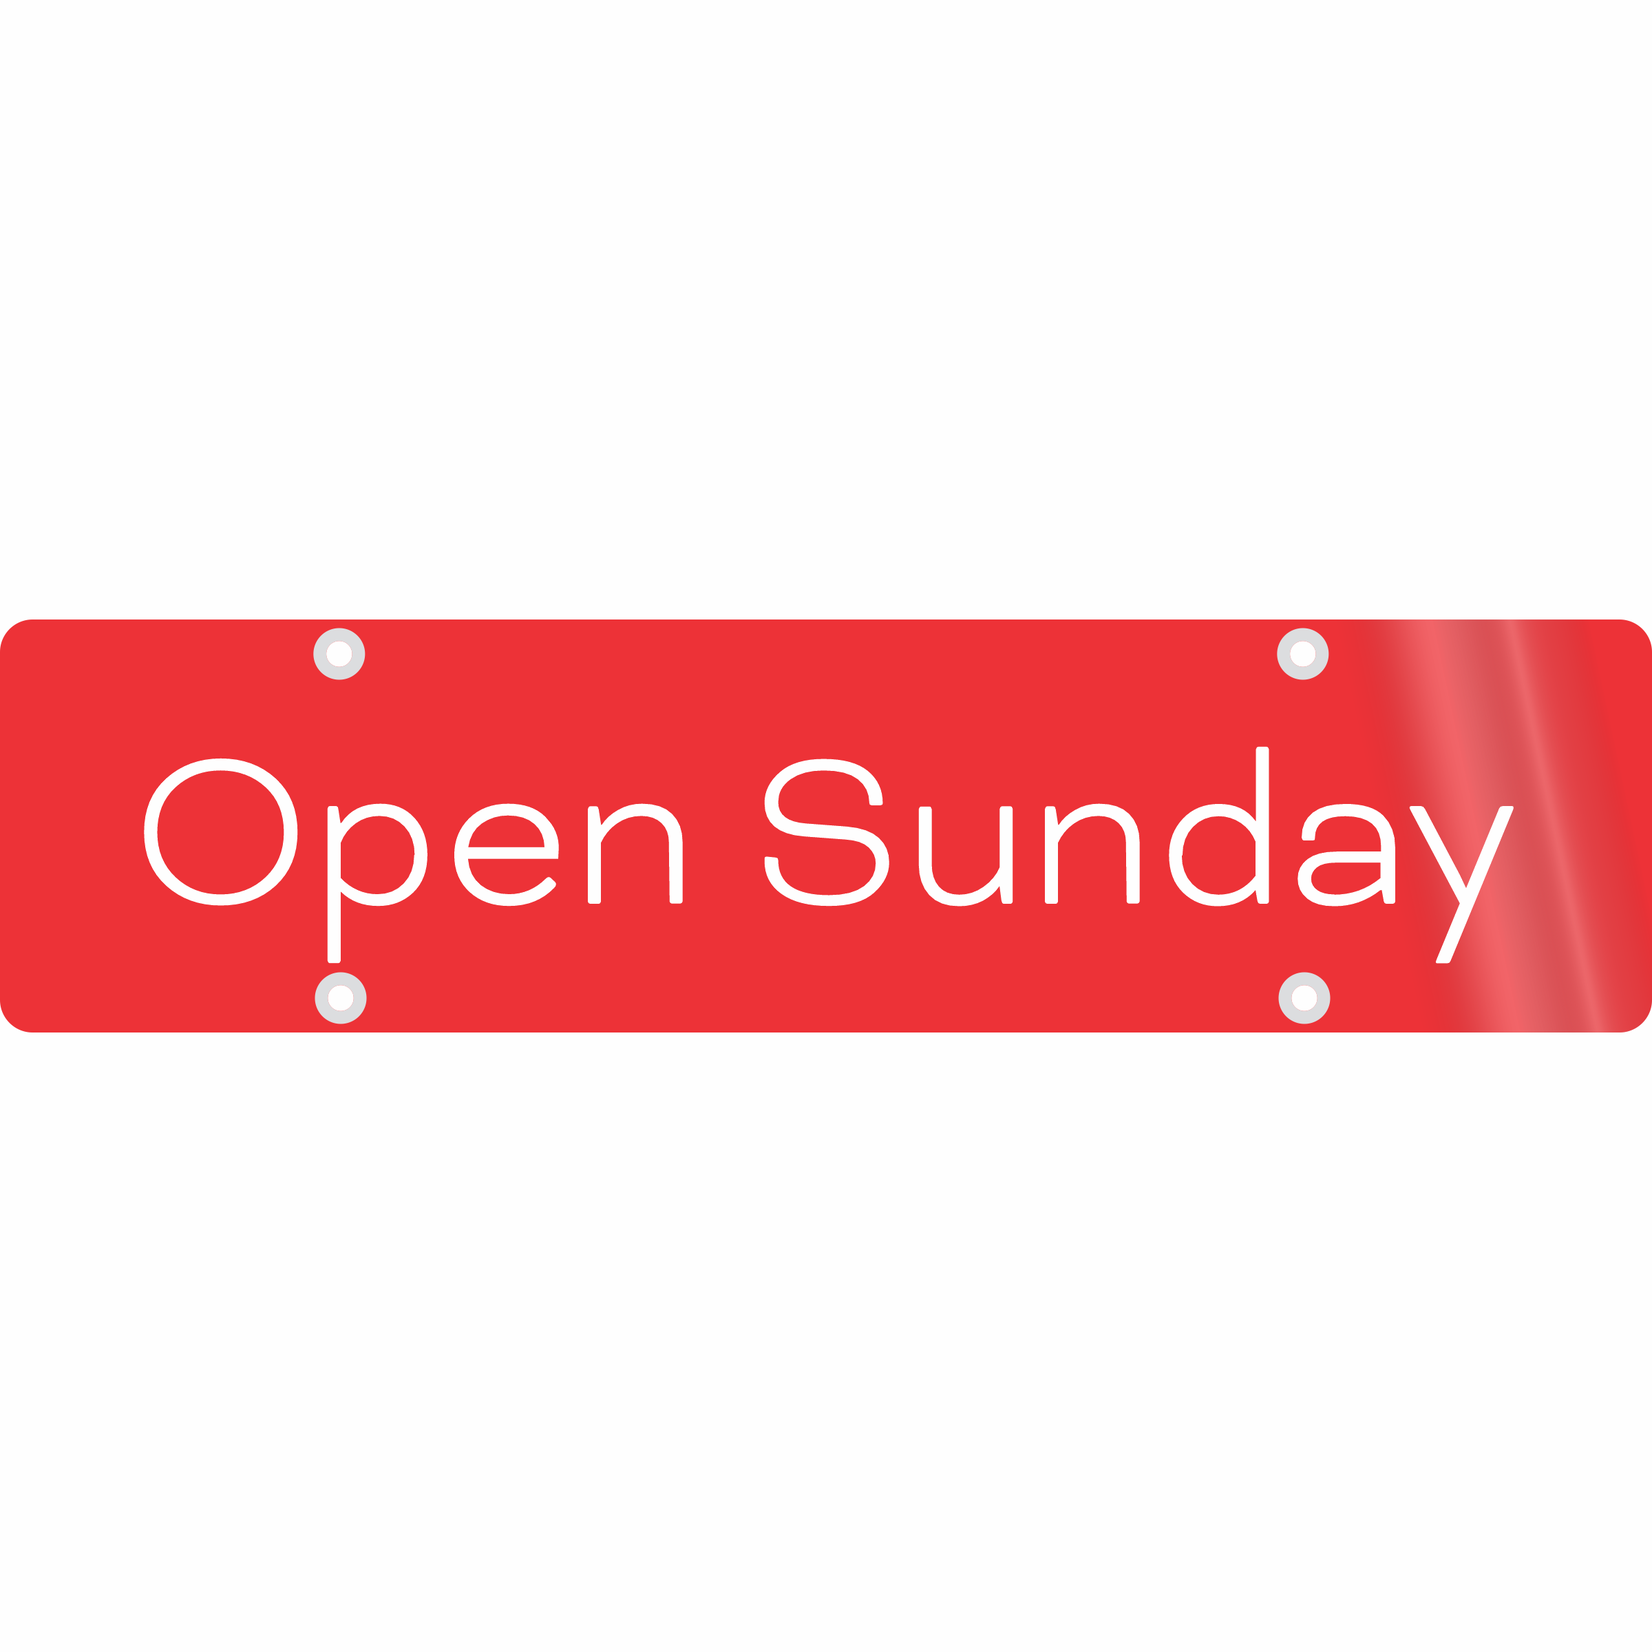 24" x 6" - Open Sunday